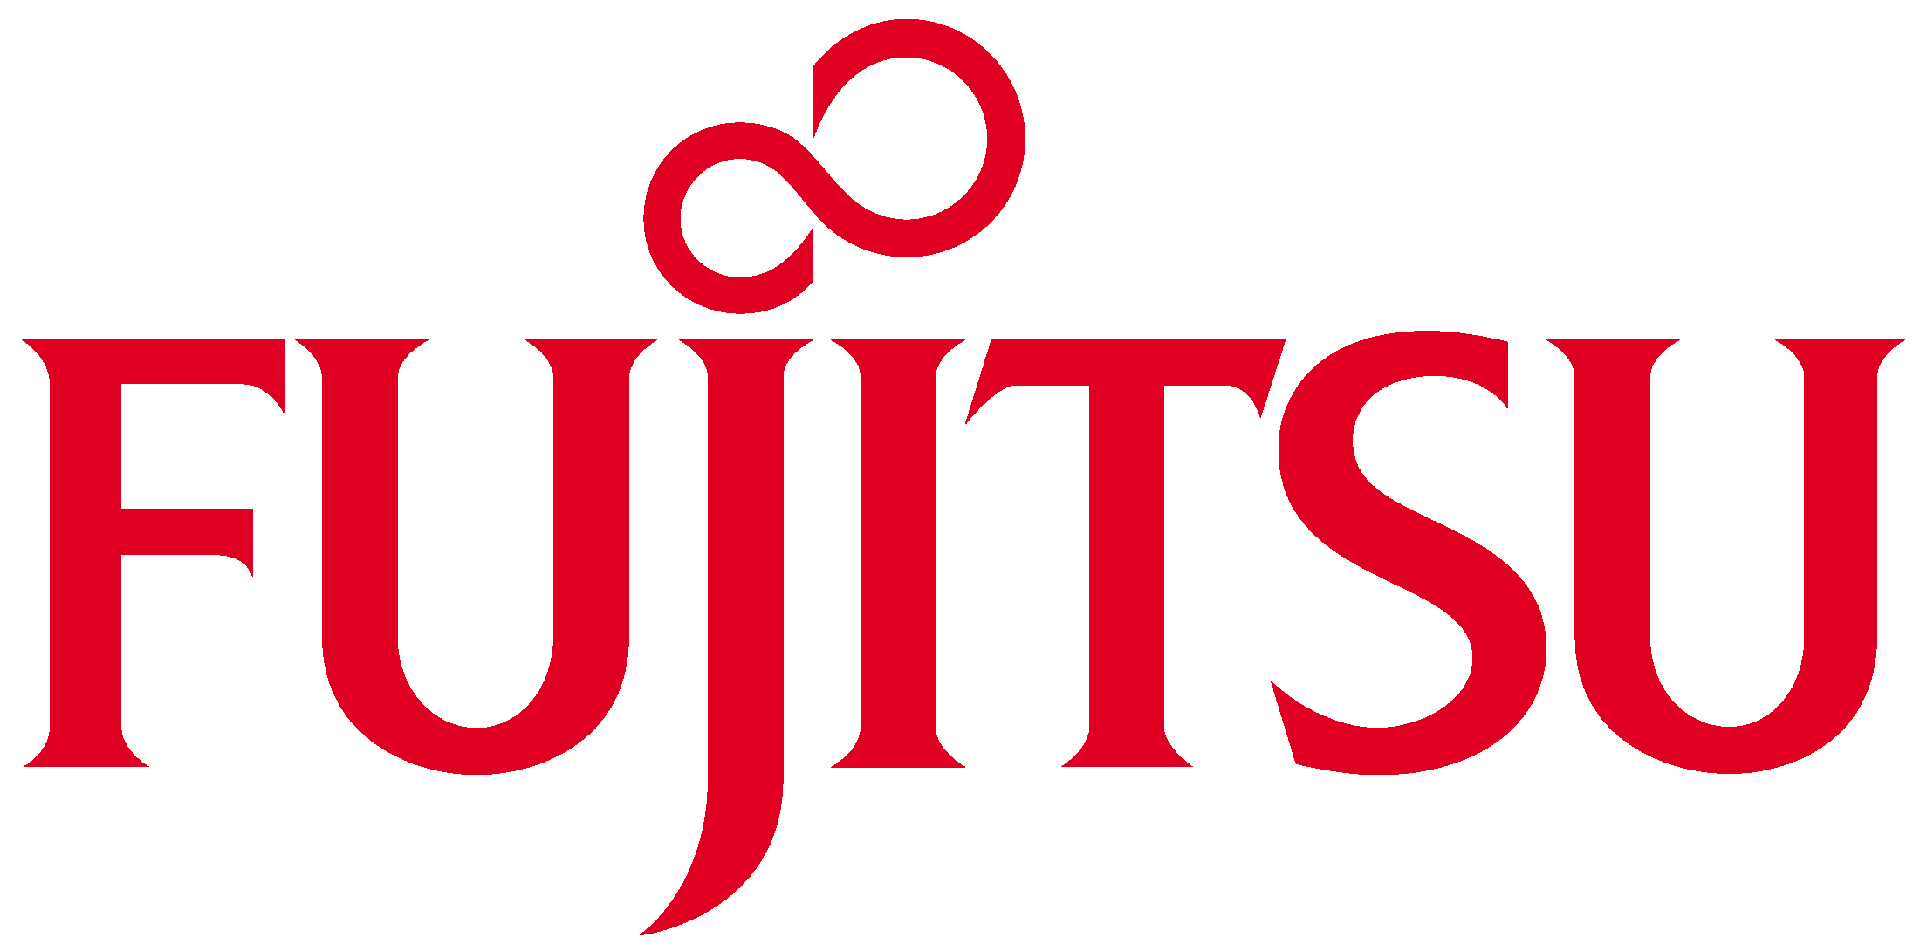 Brand: FUJITSU